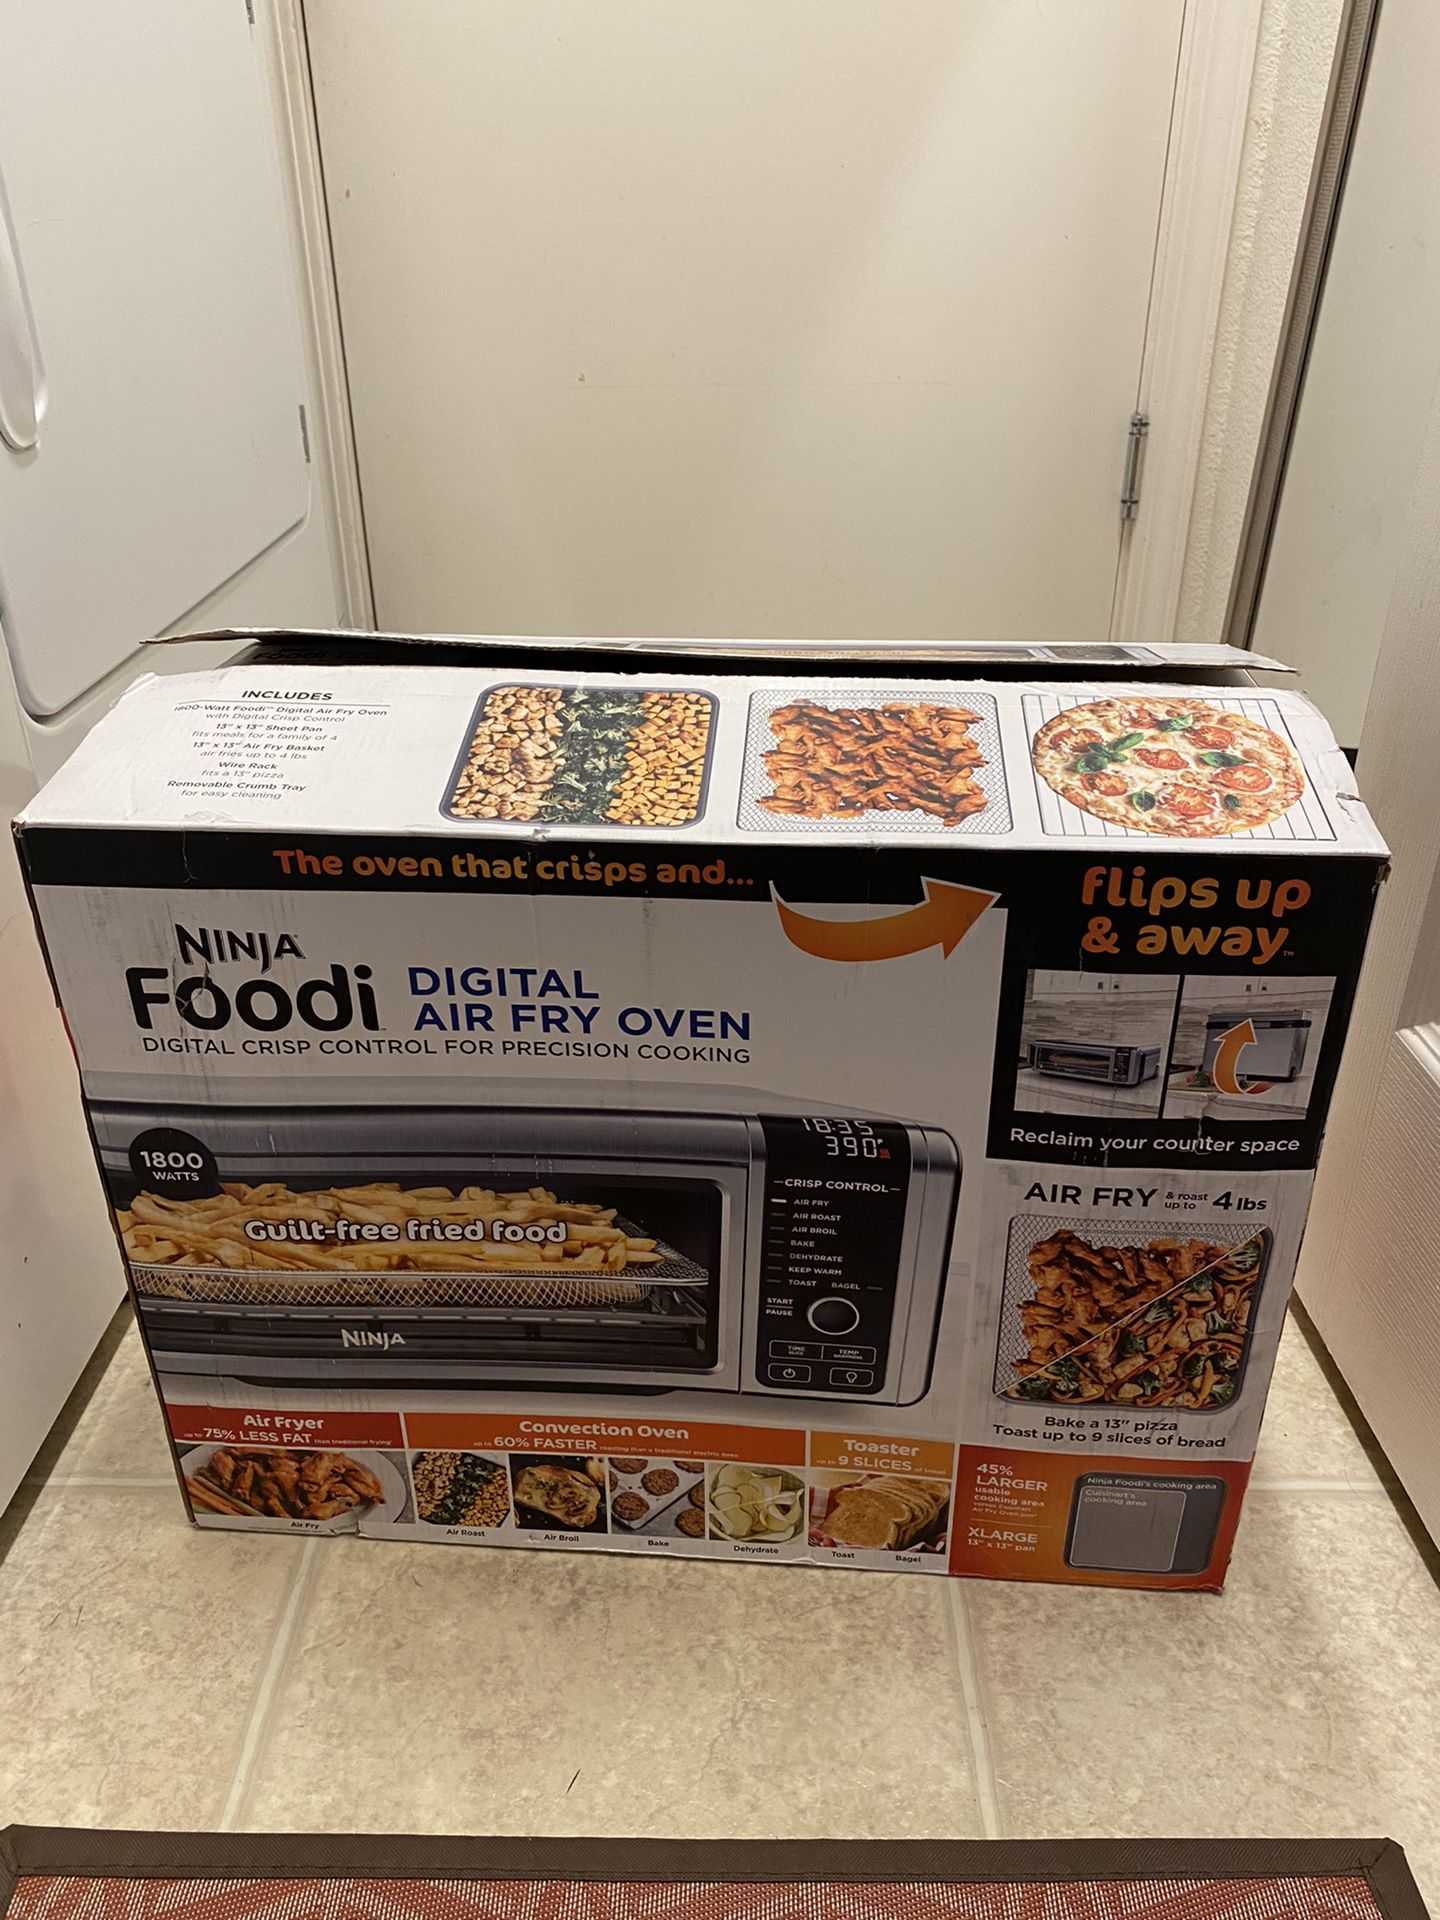 Ninja Foodi Digital Air Fry Sheet Pan Oven 